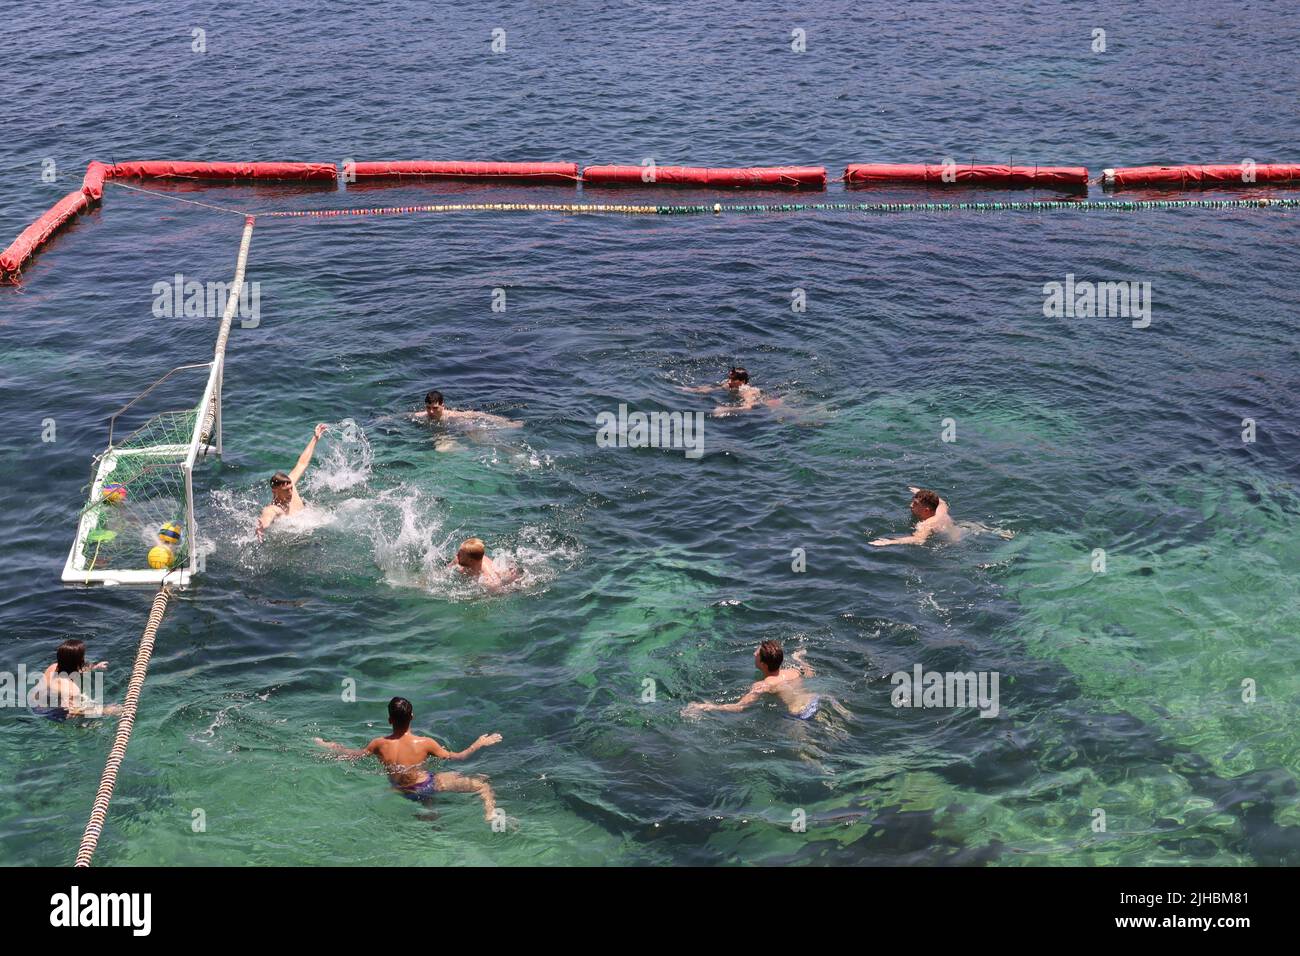 BUT!! Des joueurs de water-polo au cours d'une session d'entraînement dans une partie de la baie à Marsalforn, Gozo, Malte Banque D'Images